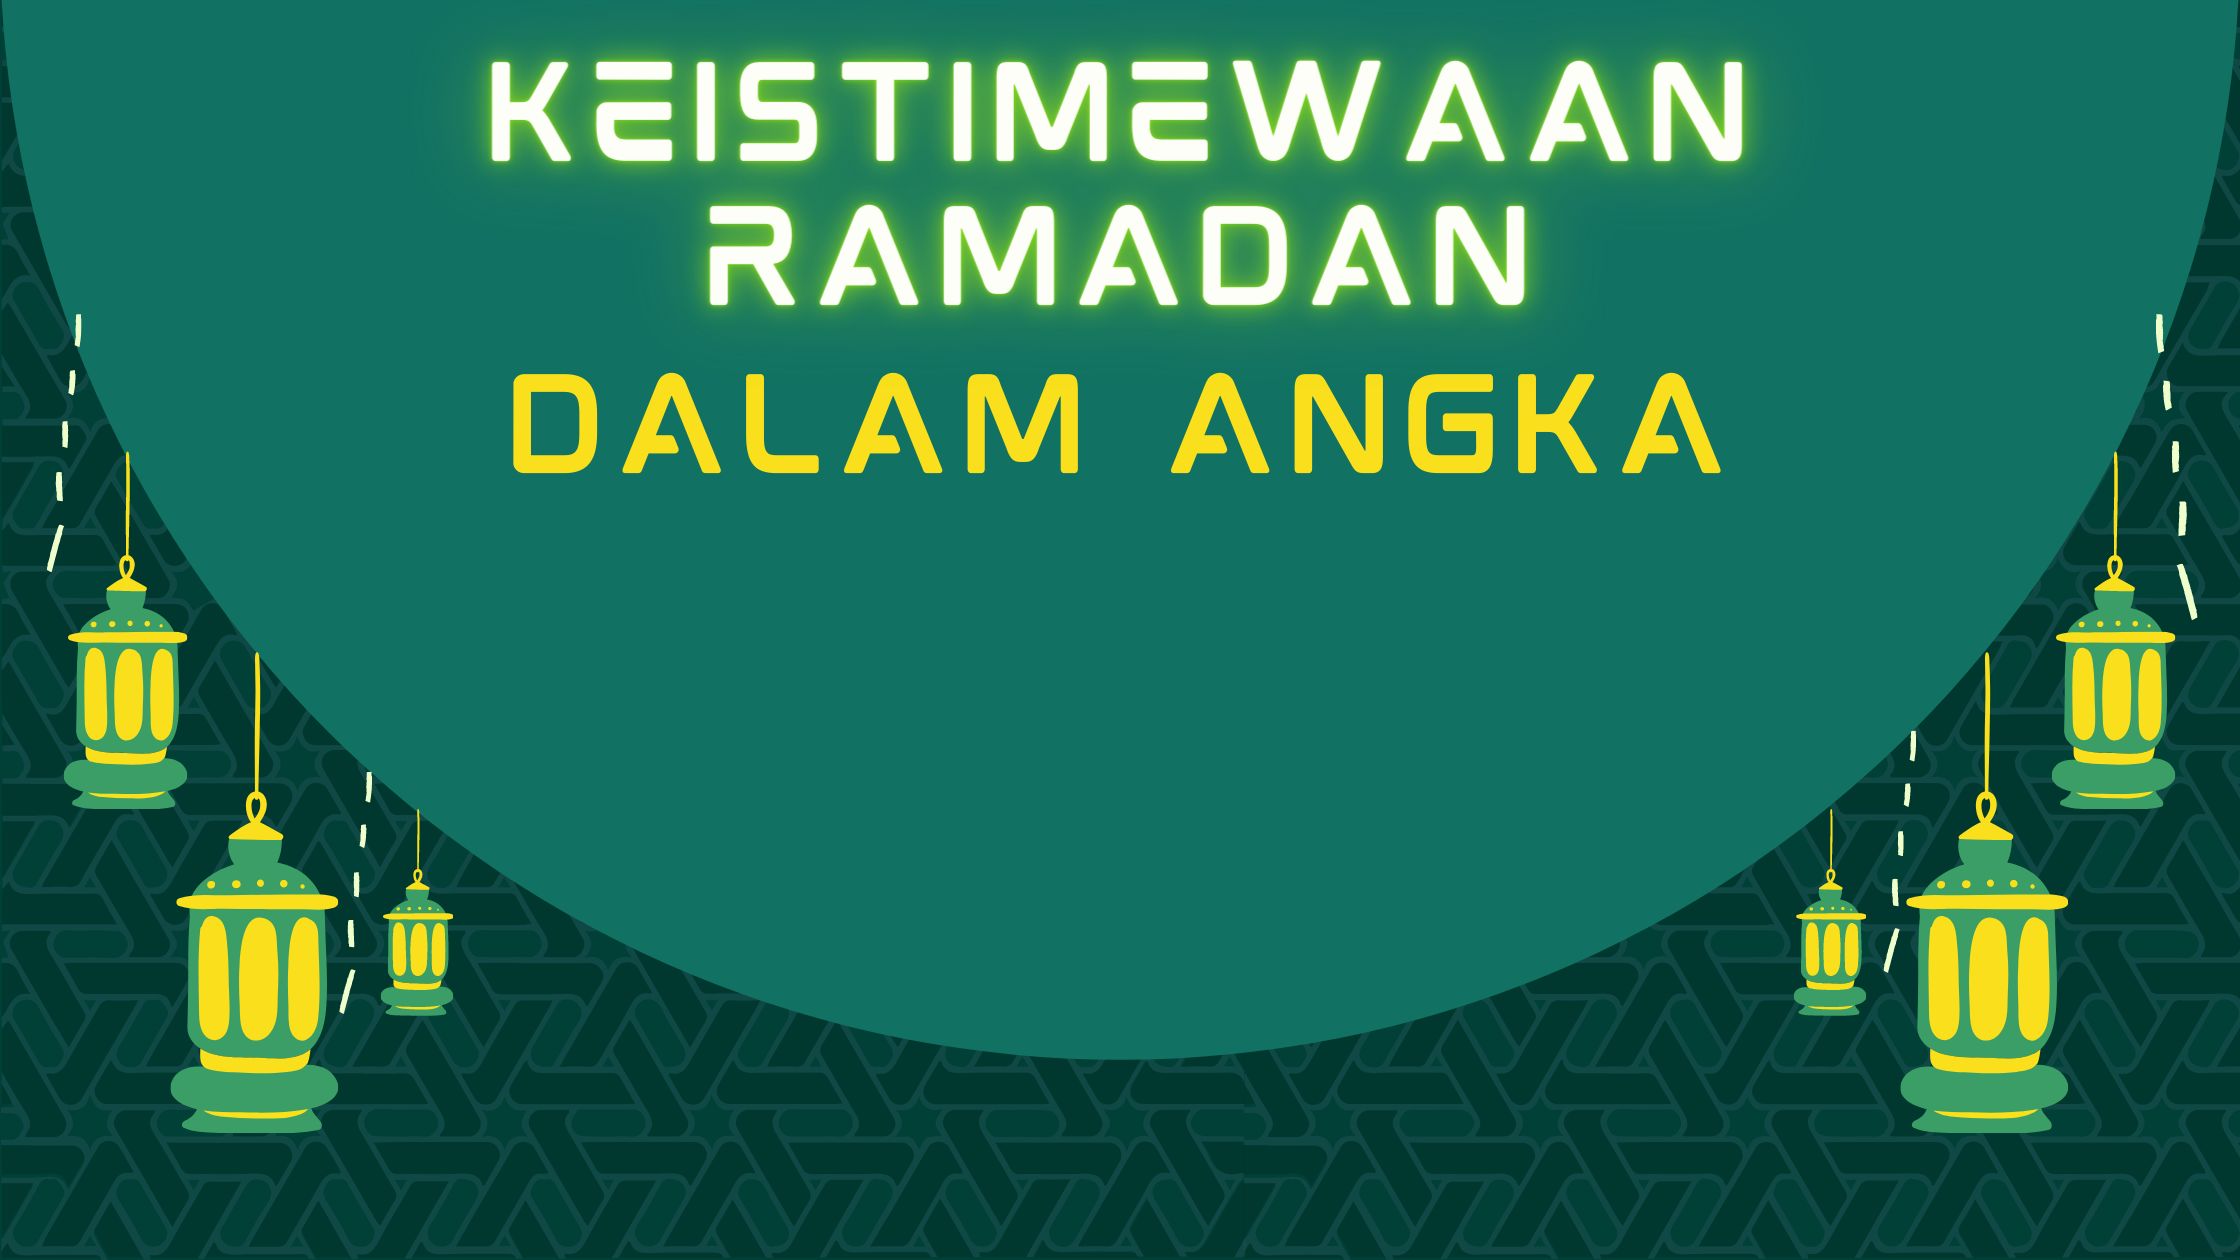 Keistimewaan Ramadan dalam Angka